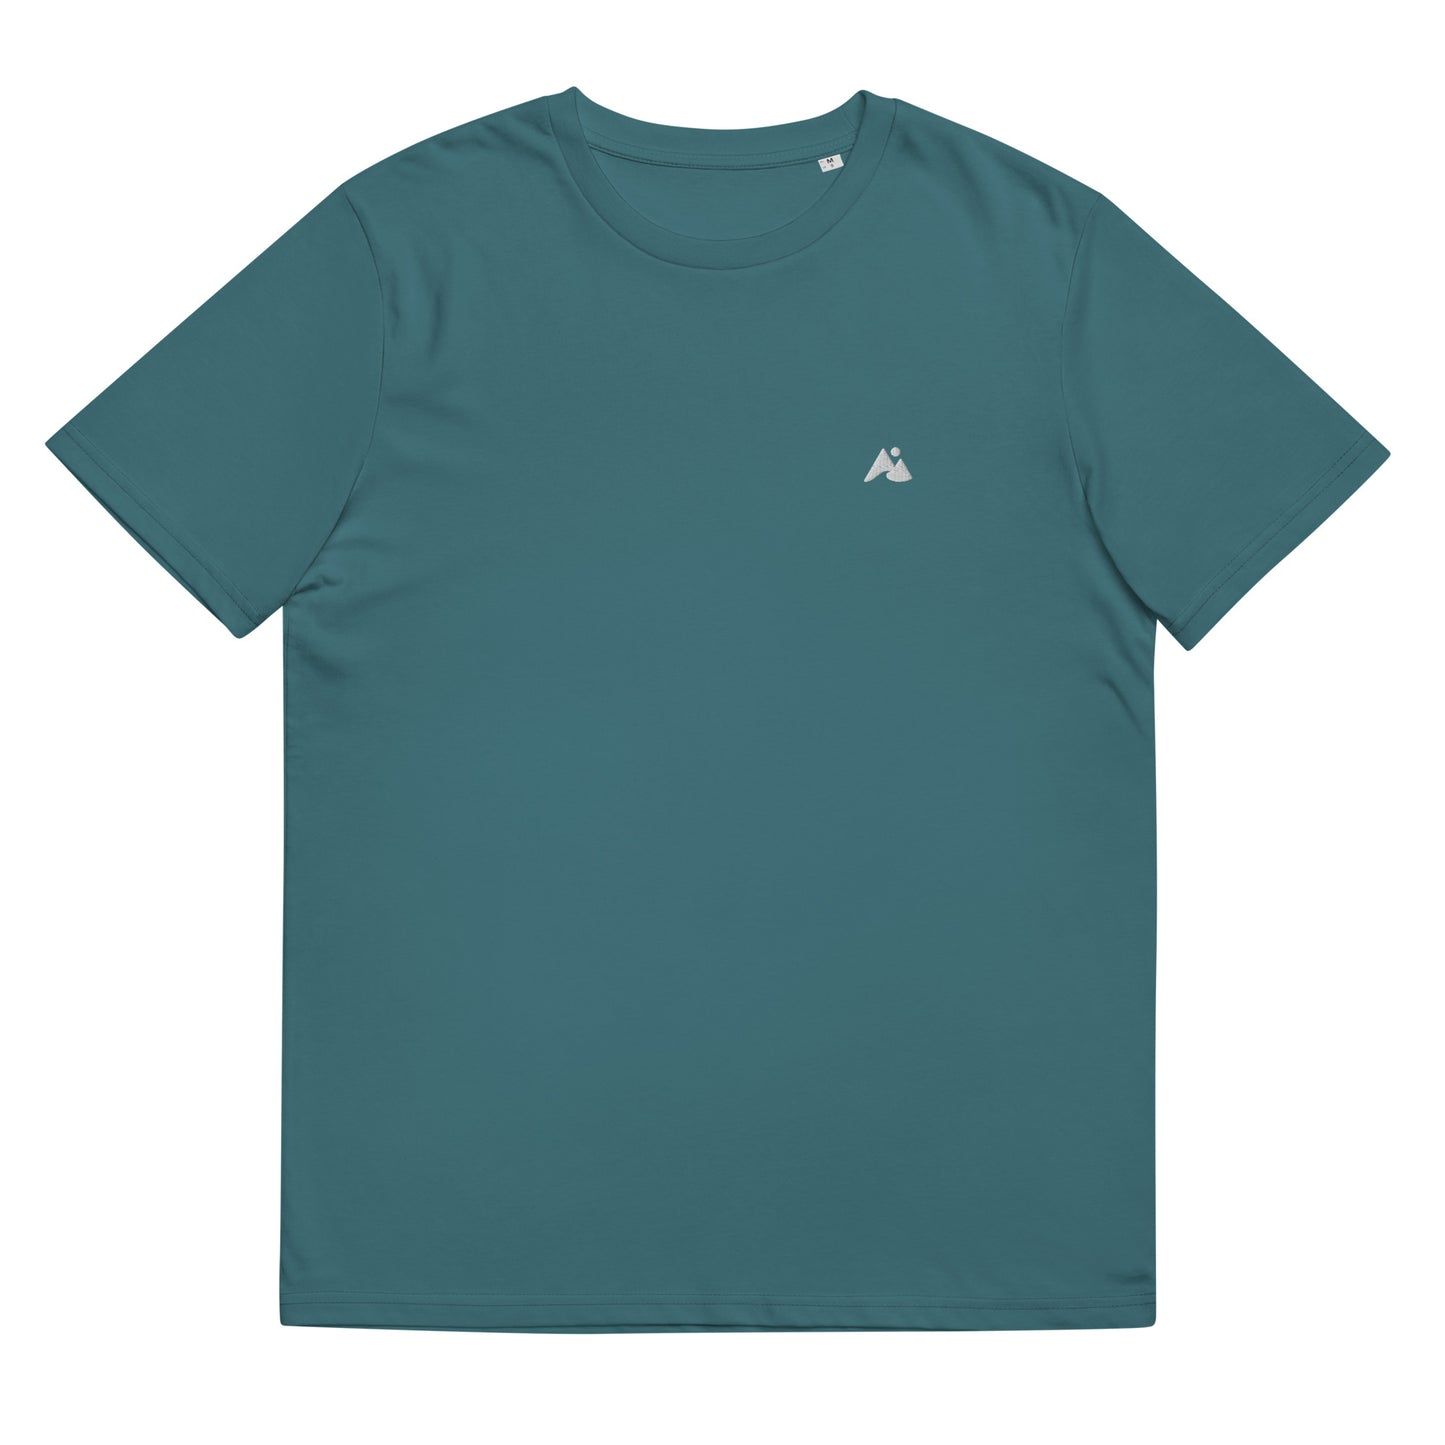 Il s'agit d'une image d'un t-shirt unisexe de couleur bleu canard. Le t-shirt est présenté sur un fond blanc. Il y a un petit logo montagne et vague blanc sur la poitrine côté cœur.